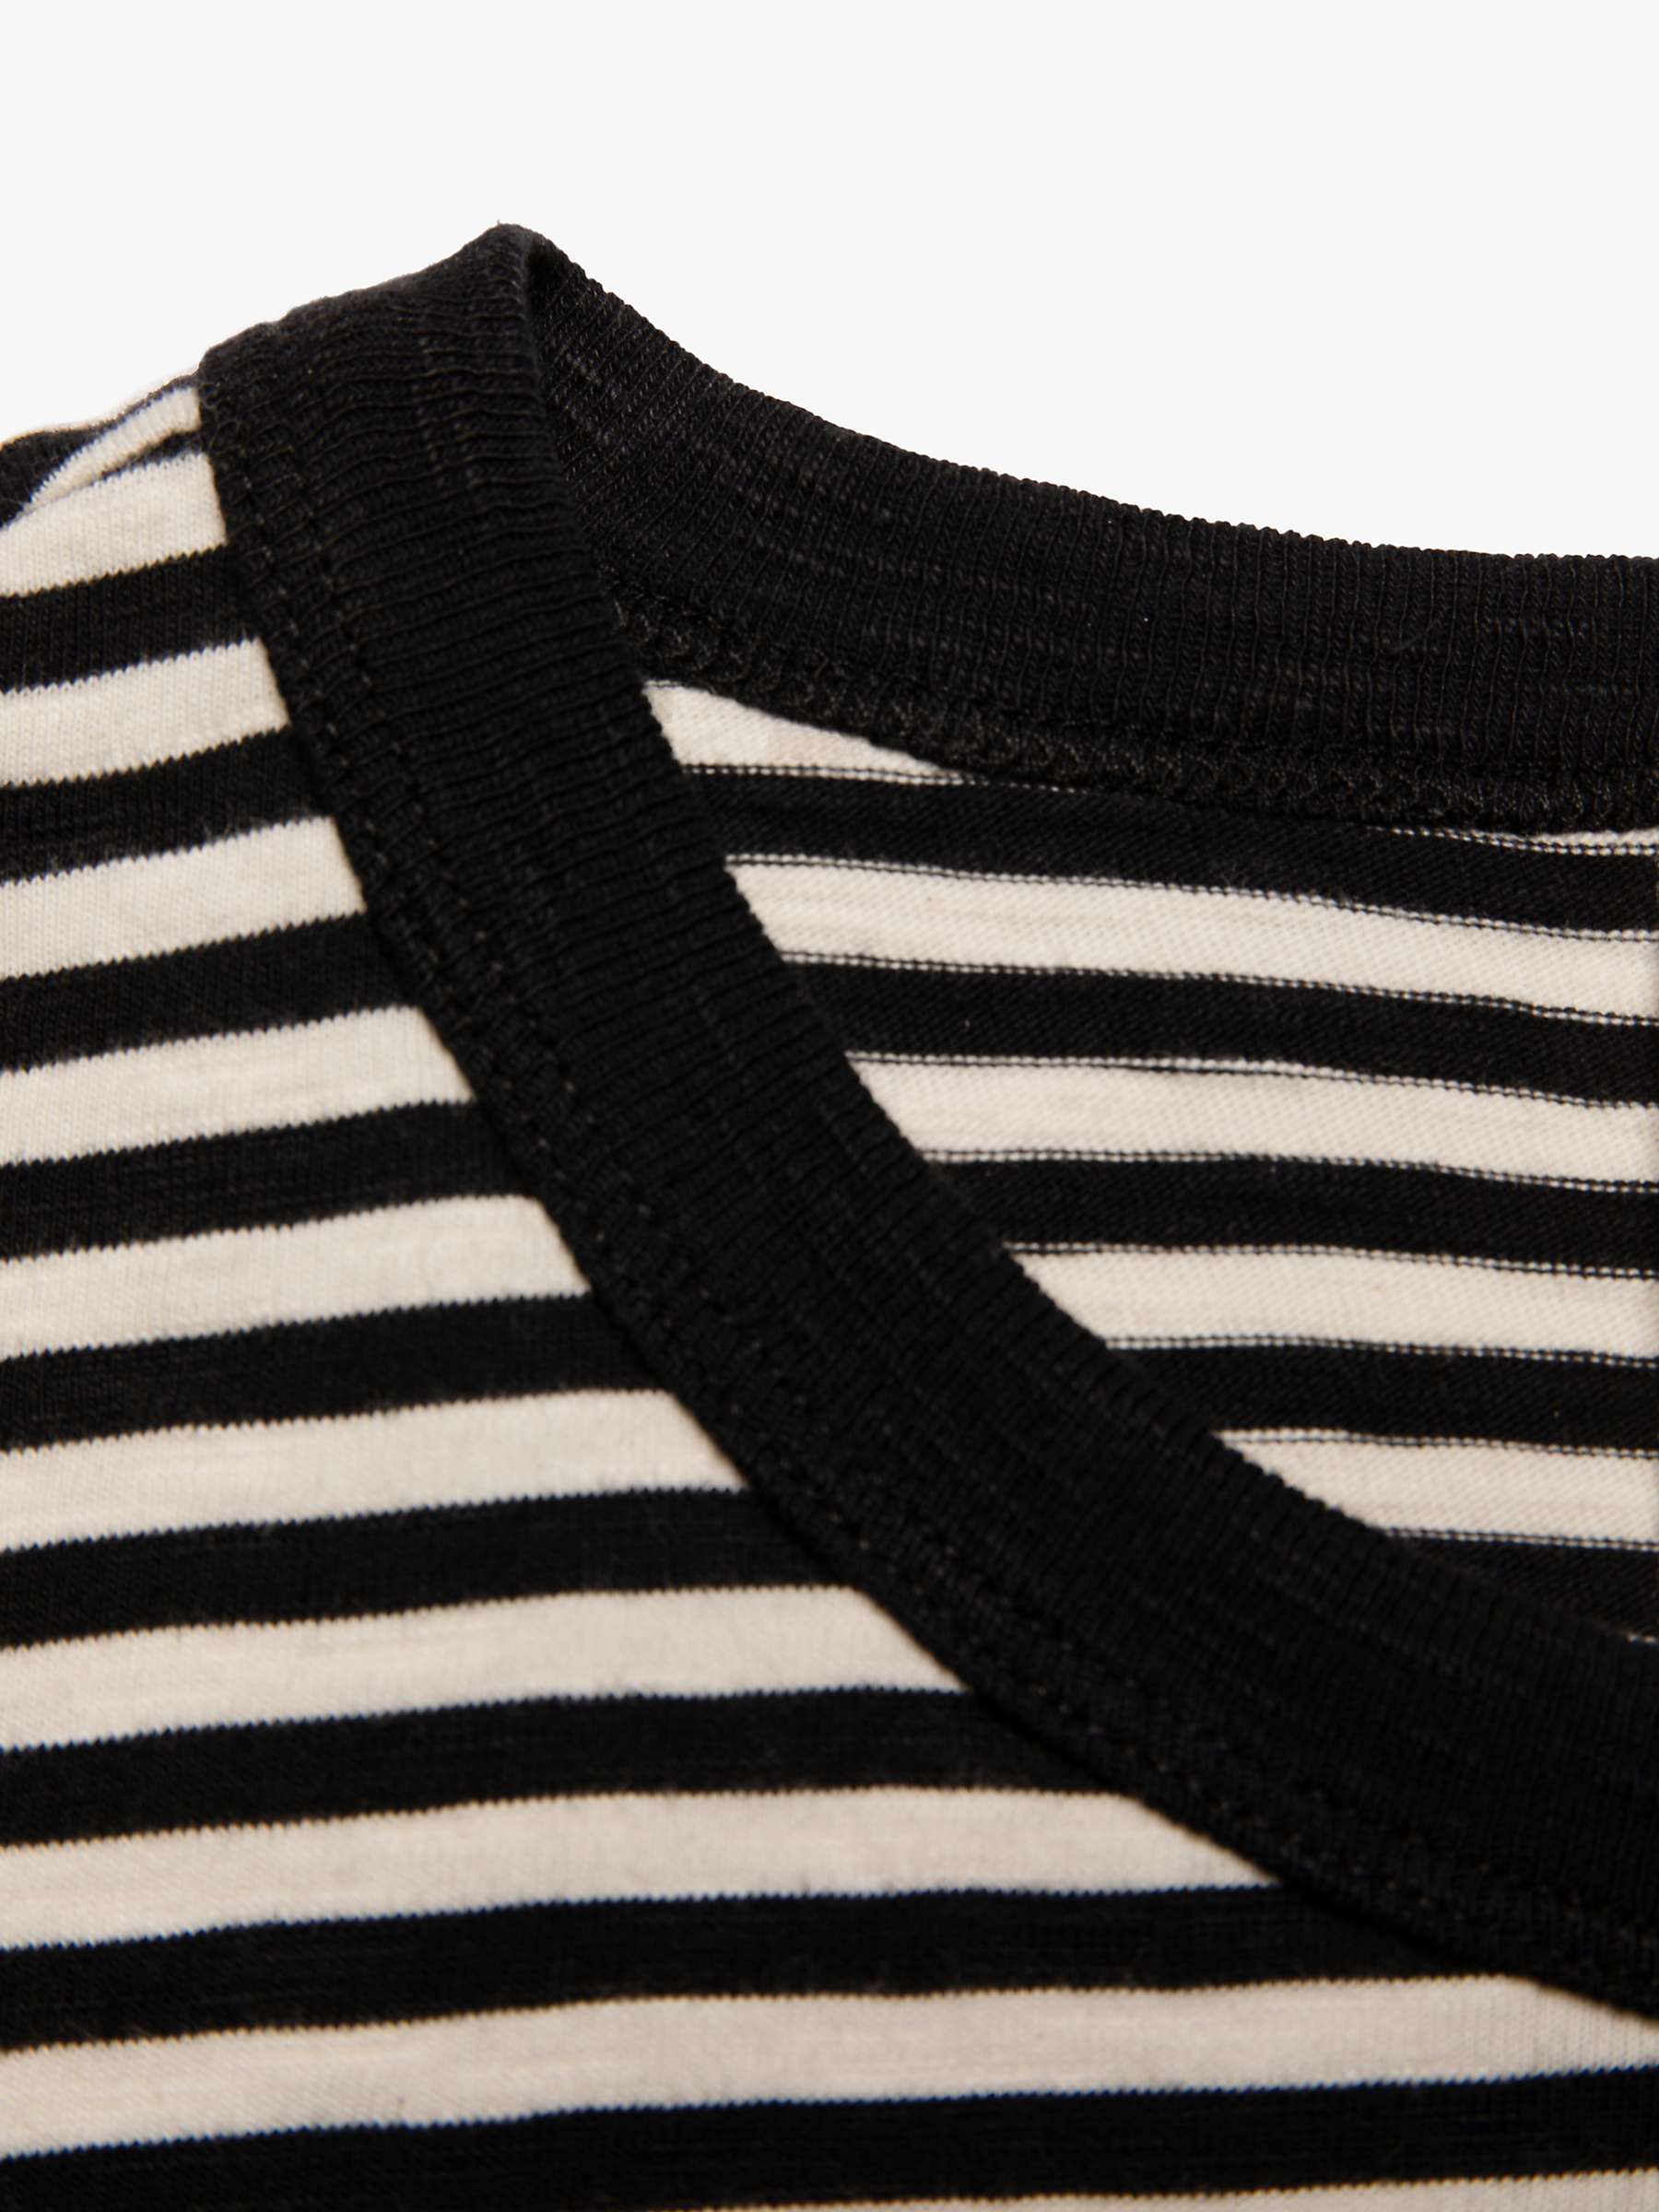 Buy Nudie Jeans Roy Slub Stripe T-Shirt, Ecru/Black Online at johnlewis.com